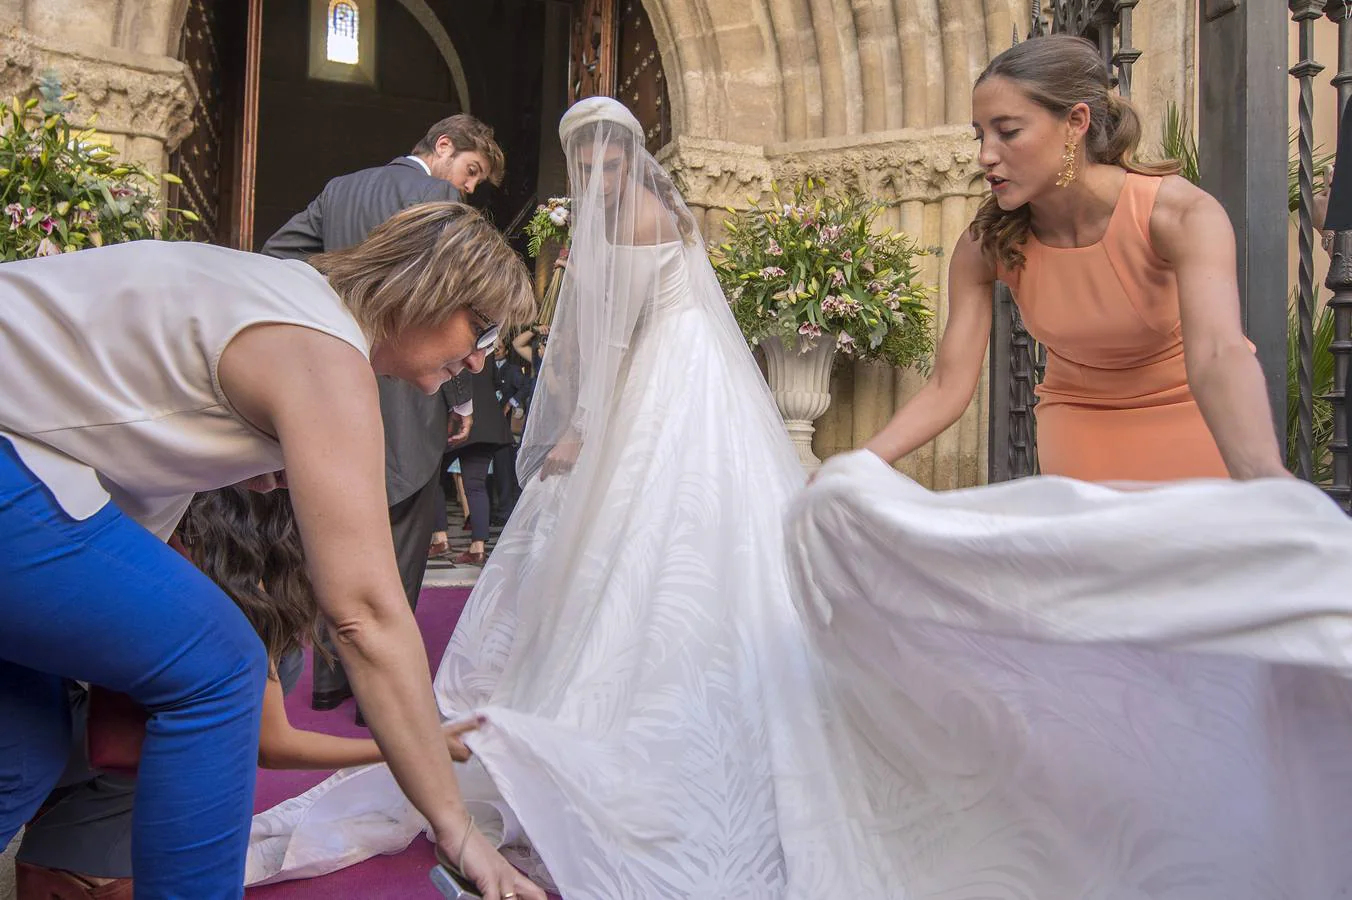 La boda de Sibi Montes y Álvaro Sanchís, en imágenes